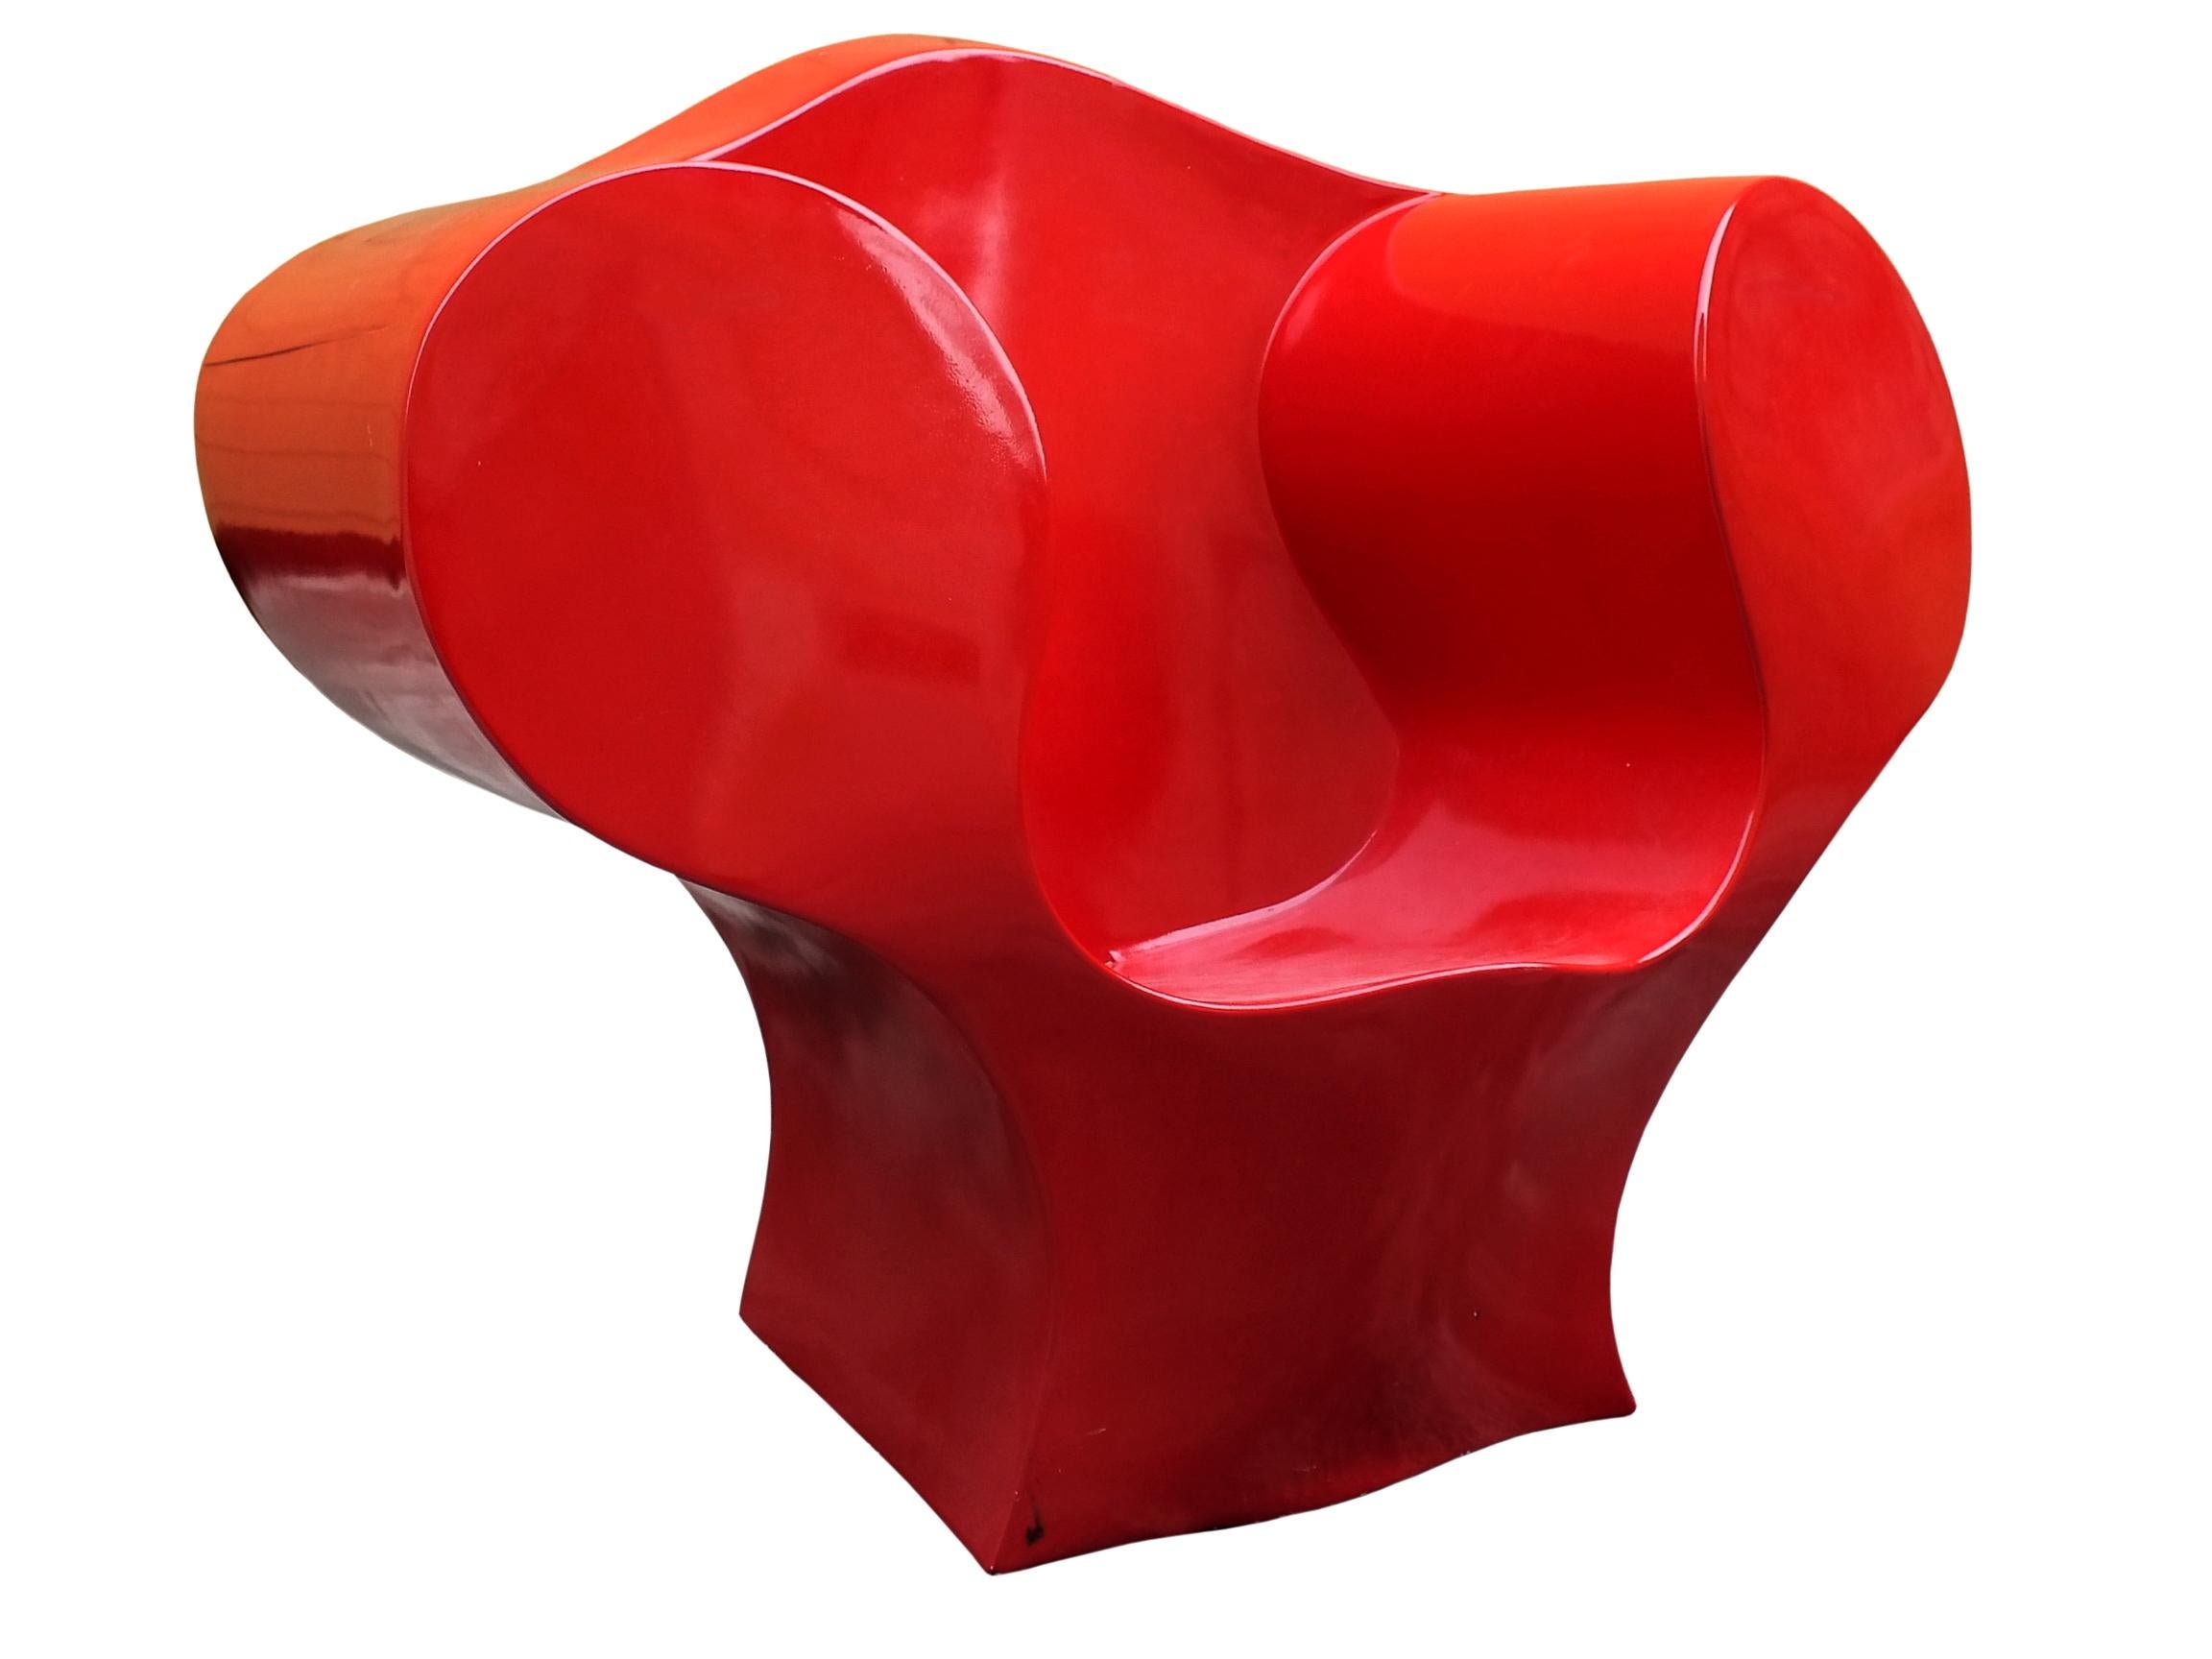 Ron Arad big easy armchair von Moroso Italien Jahre '90, MATERIAL; polietilene glänzend rot, dies ist eine rot lackierte Version bin Jahre 1991 entworfen.

 Guter Vintage-Zustand mit leichten Gebrauchsspuren, signiert und datiert 06/03.

 Maße: